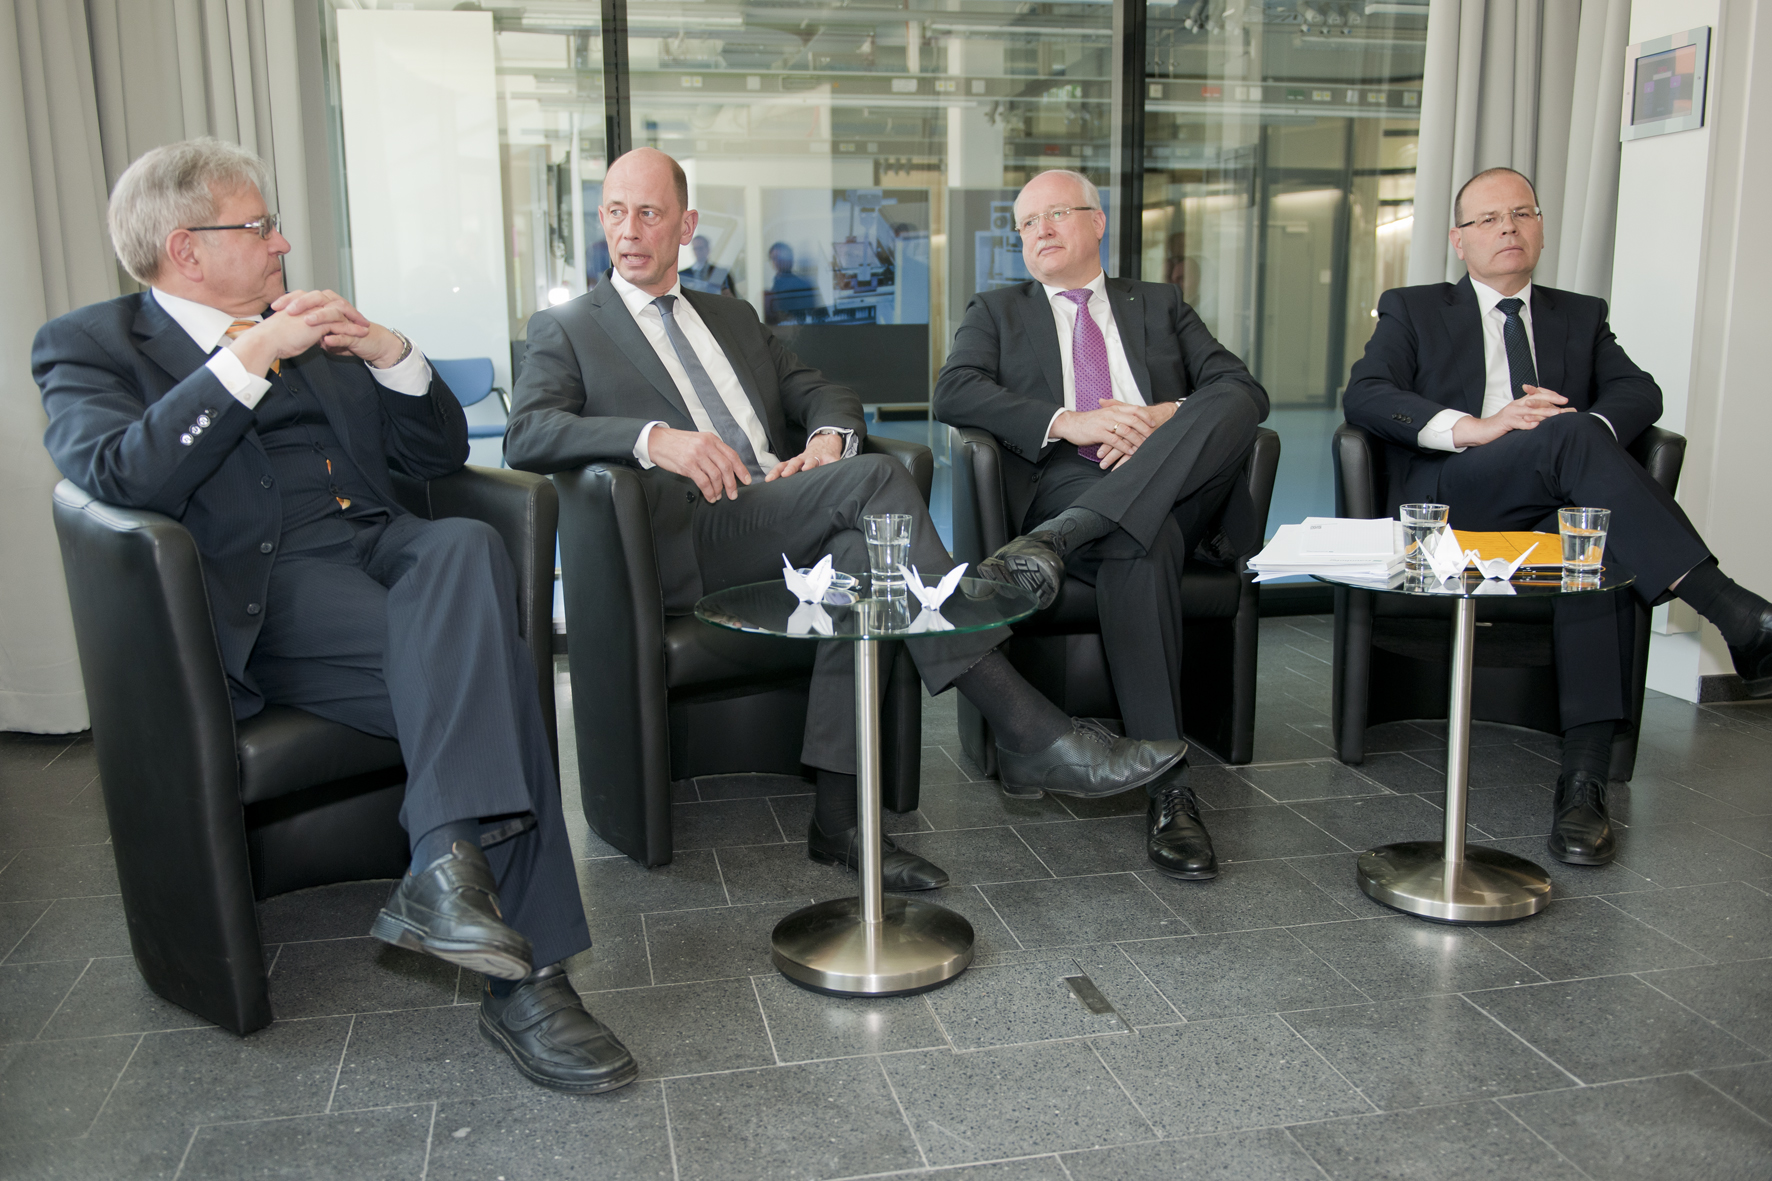 Pressegespräch mit Prof. Dr. Frank Emmrich, Wolfgang Tiefensee, Prof. Dr. Alexander Kurz und Uwe Albrecht (v.l.n.r.).